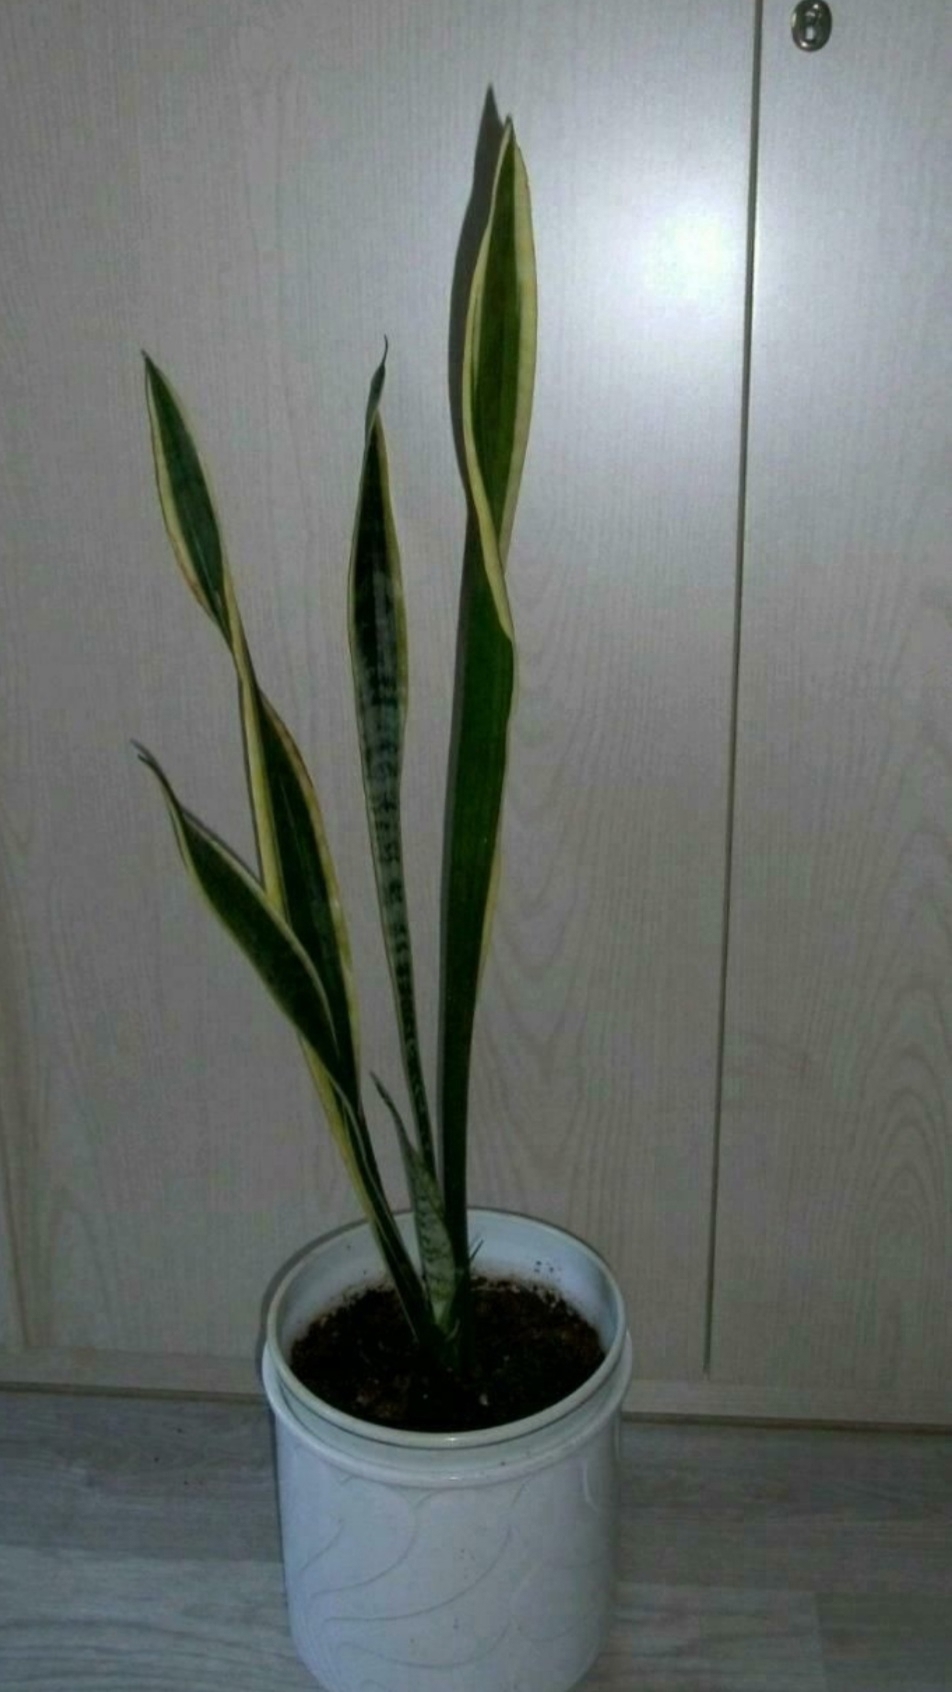 Bogenhanft Sansevieria Zimmerpflanze Pflanze Luftreinigend ca. 80 cm hoch v. Boden gemessen